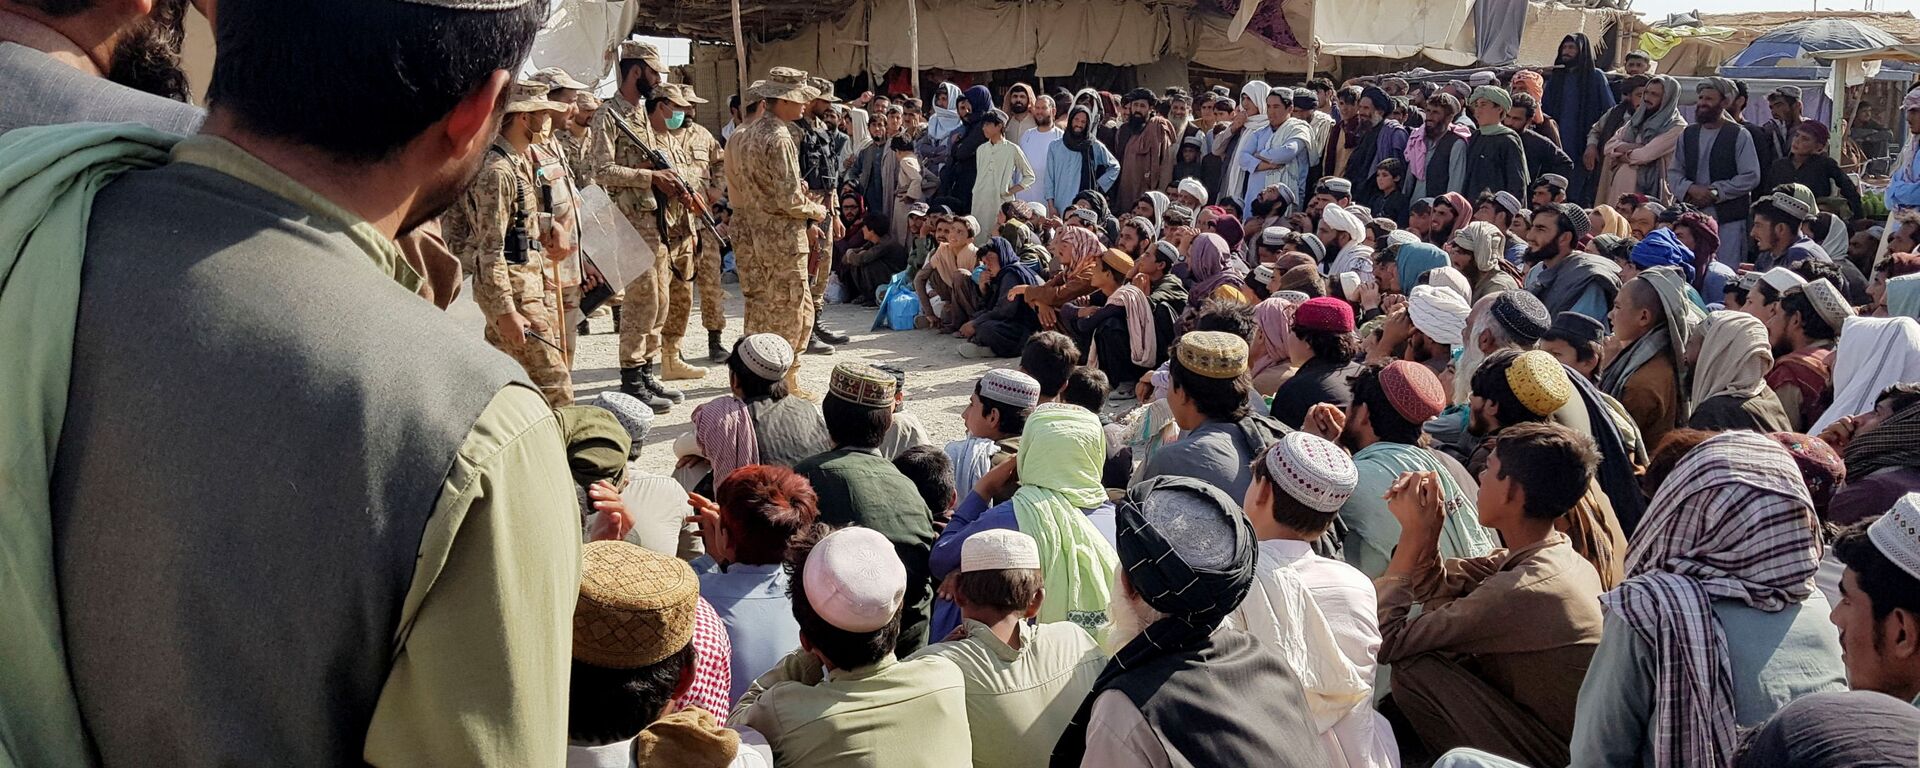 Солдаты пакистанской армии разговаривают с людьми, которые собираются пересечь пункт пропуска в пакистано-афганском пограничном городе Чаман - Sputnik Узбекистан, 1920, 23.08.2021